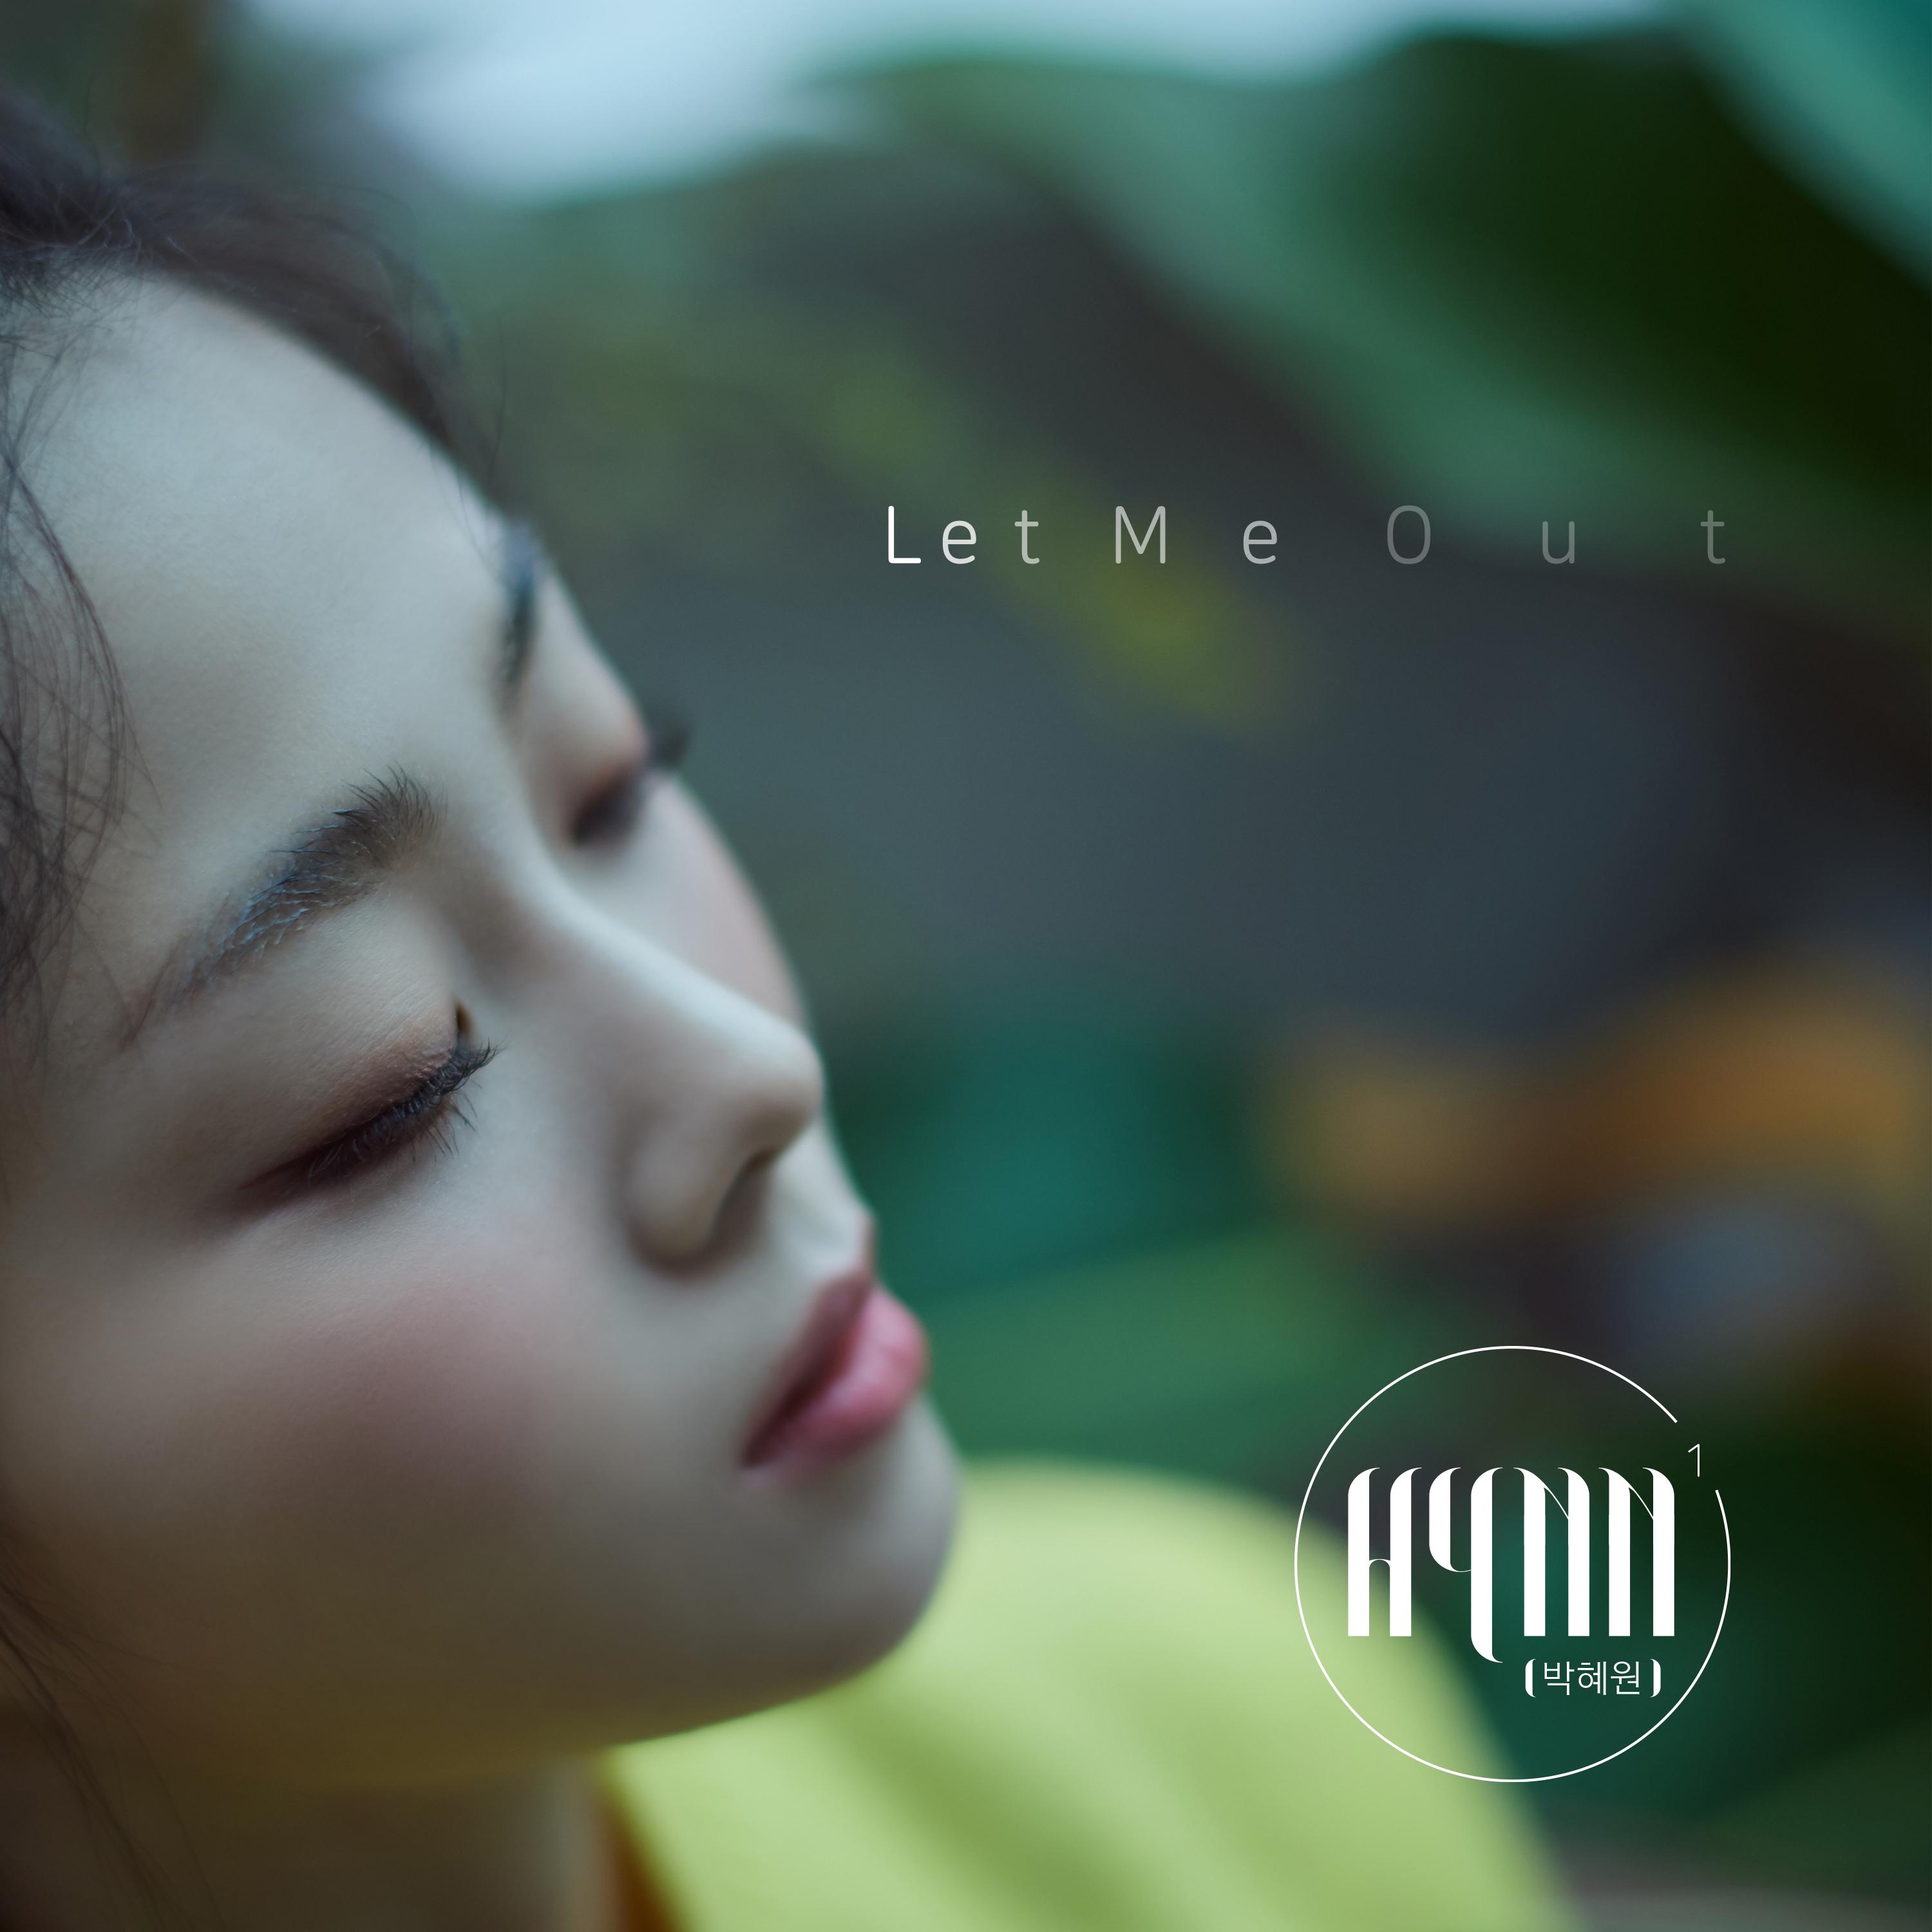 LET ME OUT歌词 歌手HYNN-专辑LET ME OUT-单曲《LET ME OUT》LRC歌词下载